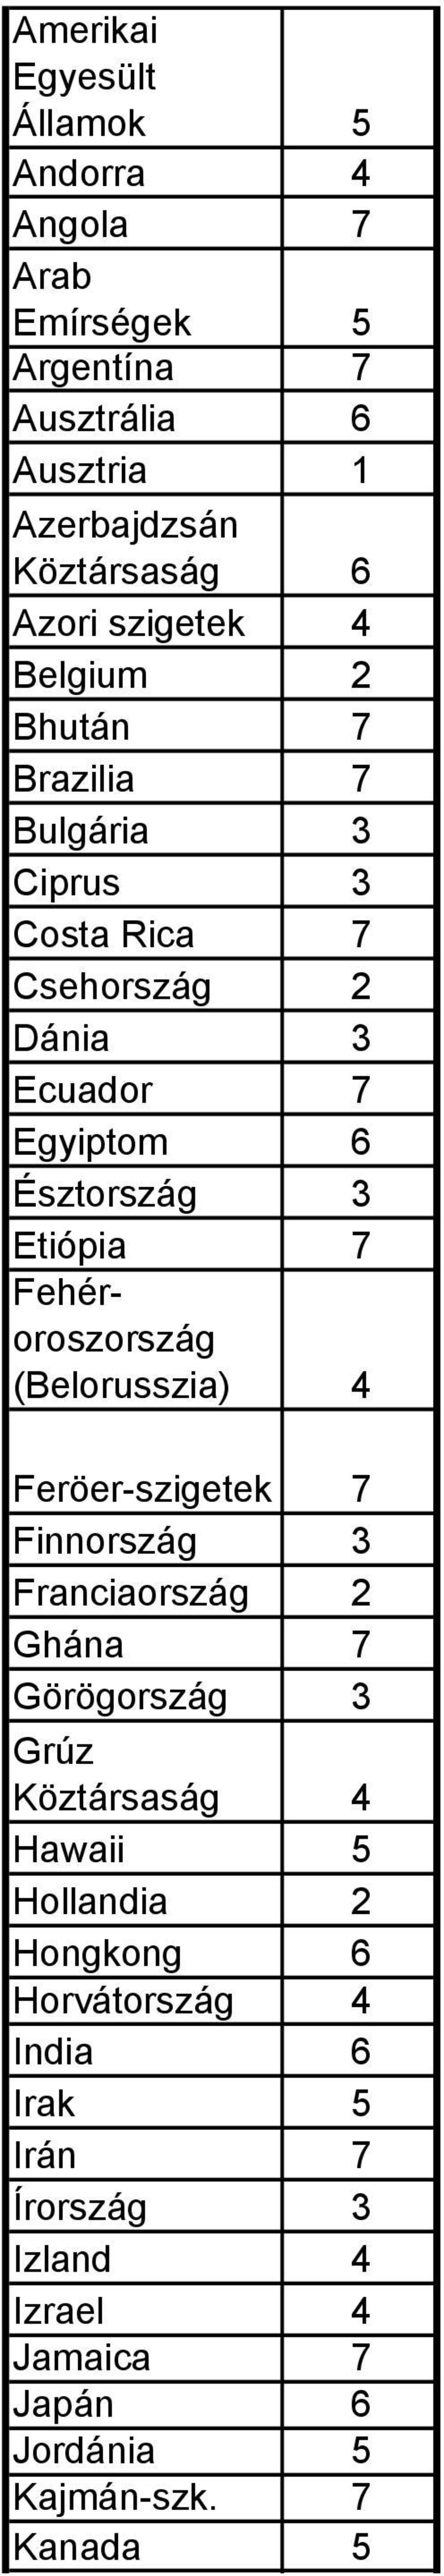 Etiópia 7 Fehéroroszország (Belorusszia) 4 Feröer-szigetek 7 Finnország 3 Franciaország 2 Ghána 7 Görögország 3 Grúz Köztársaság 4